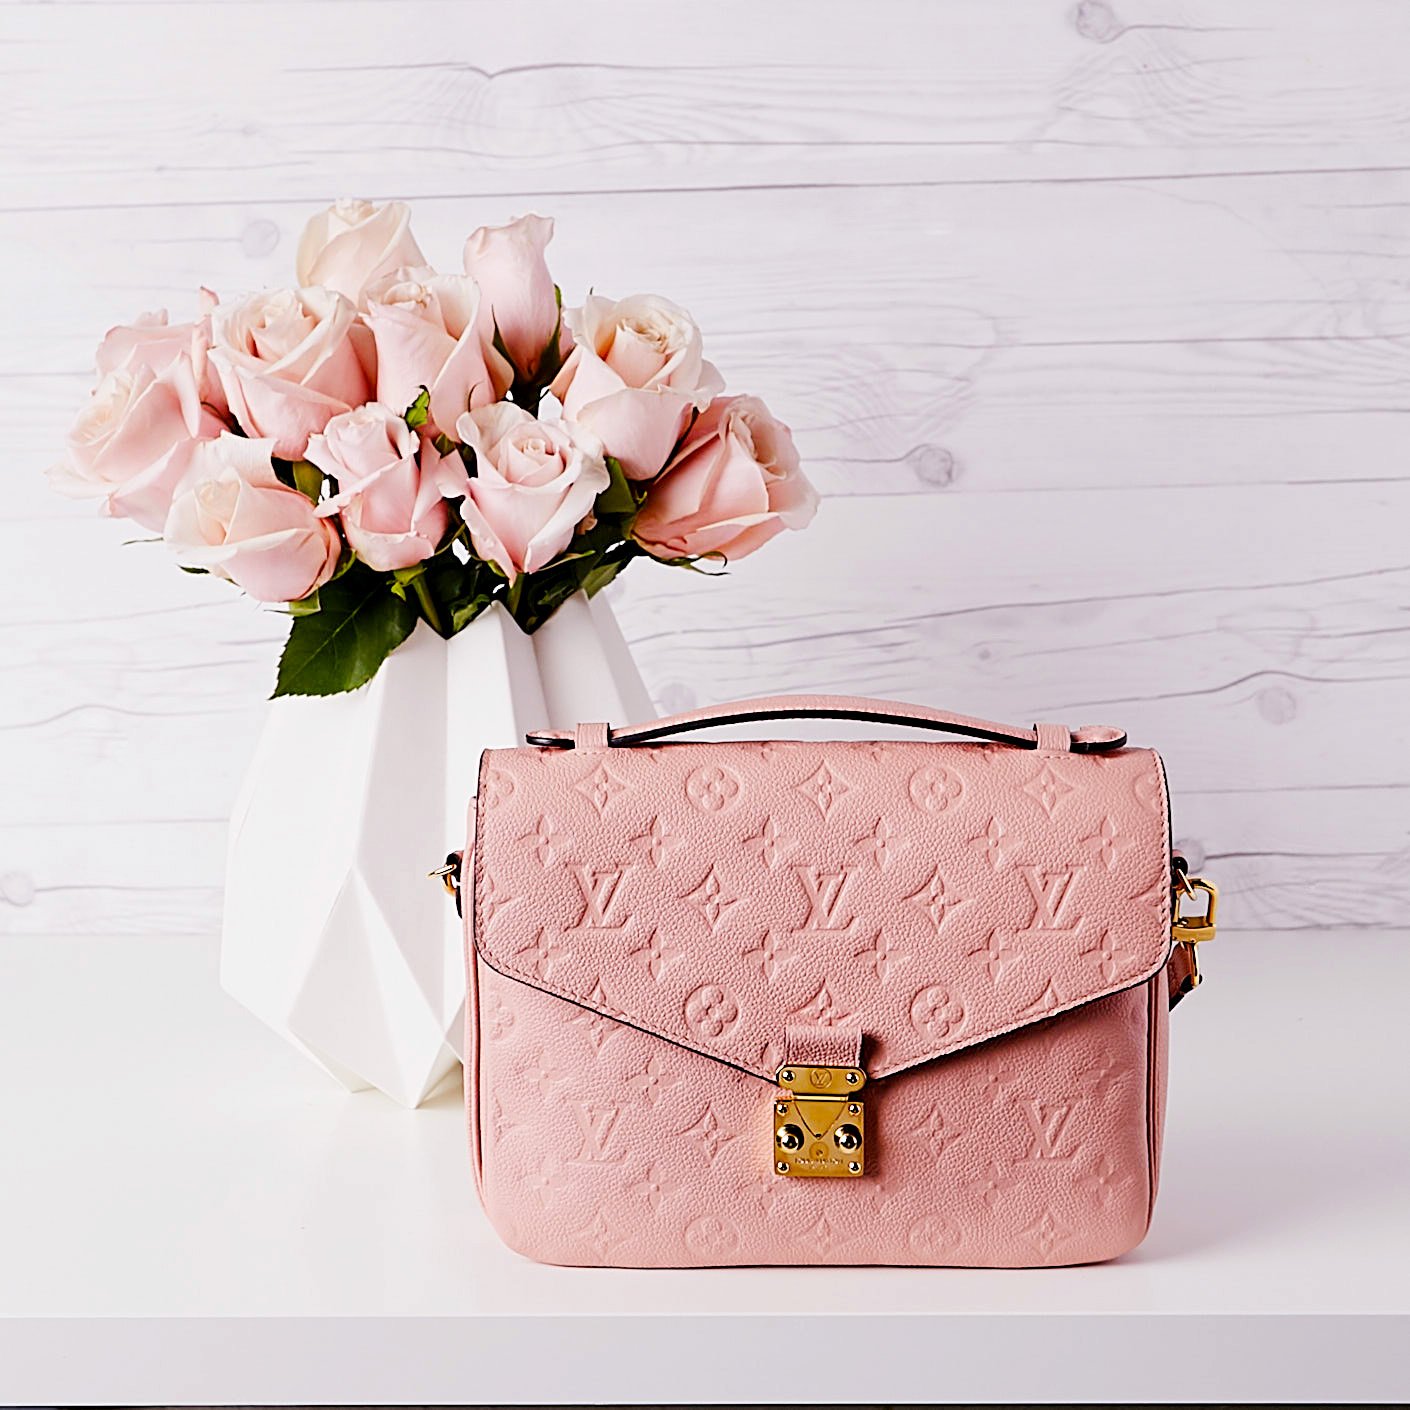 Louis Vuitton Pochette Metis Pink Poudre Bag-Louis Vuitton